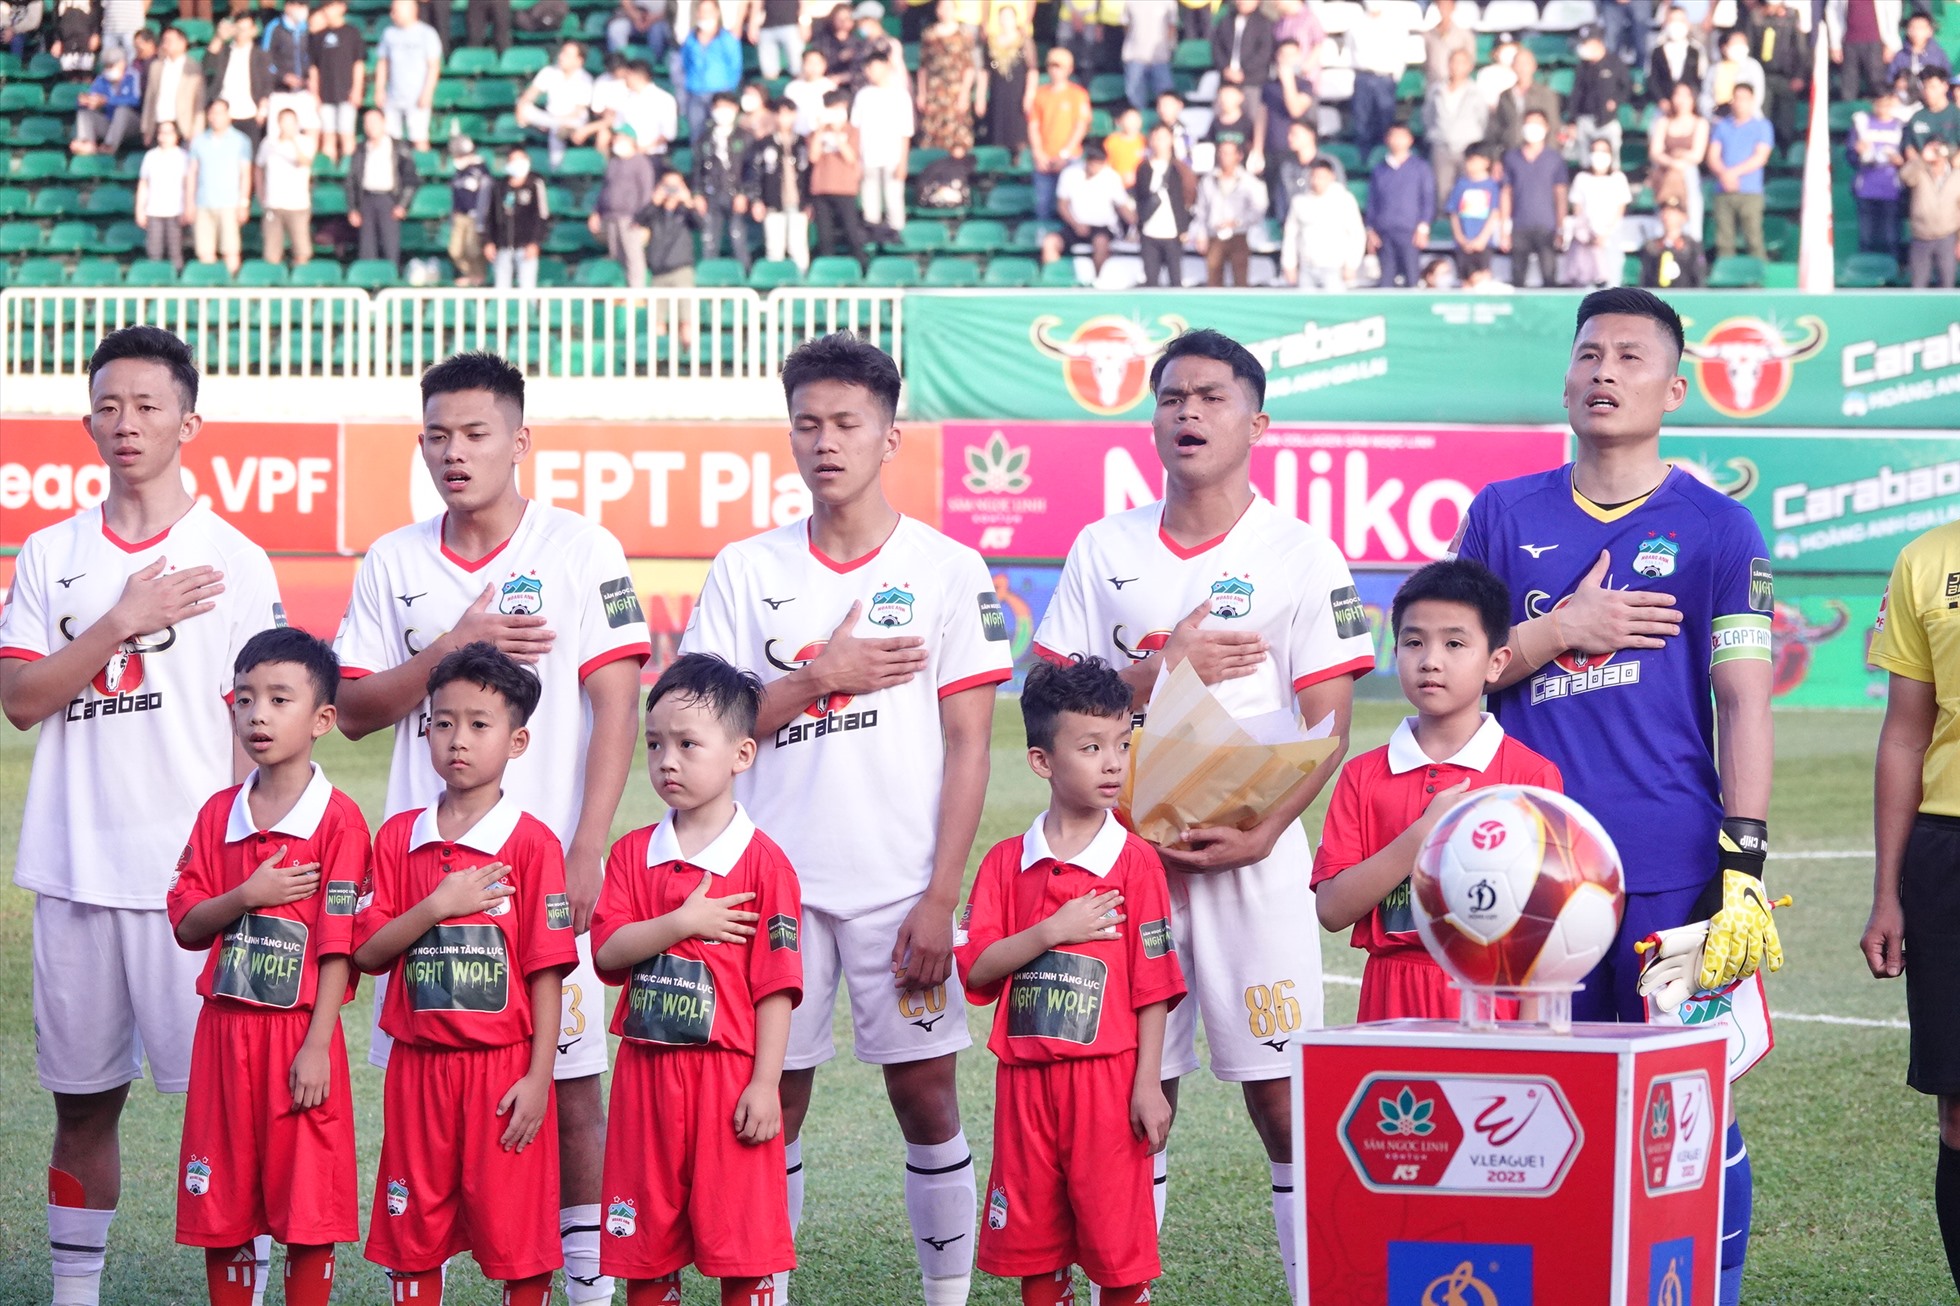 Hoàng Anh Gia Lai là đội bóng hiếm hoi tại Việt Nam có thể kiếm được tiền tài trợ từ các đối tác nước ngoài. Ảnh: Nguyễn Đăng